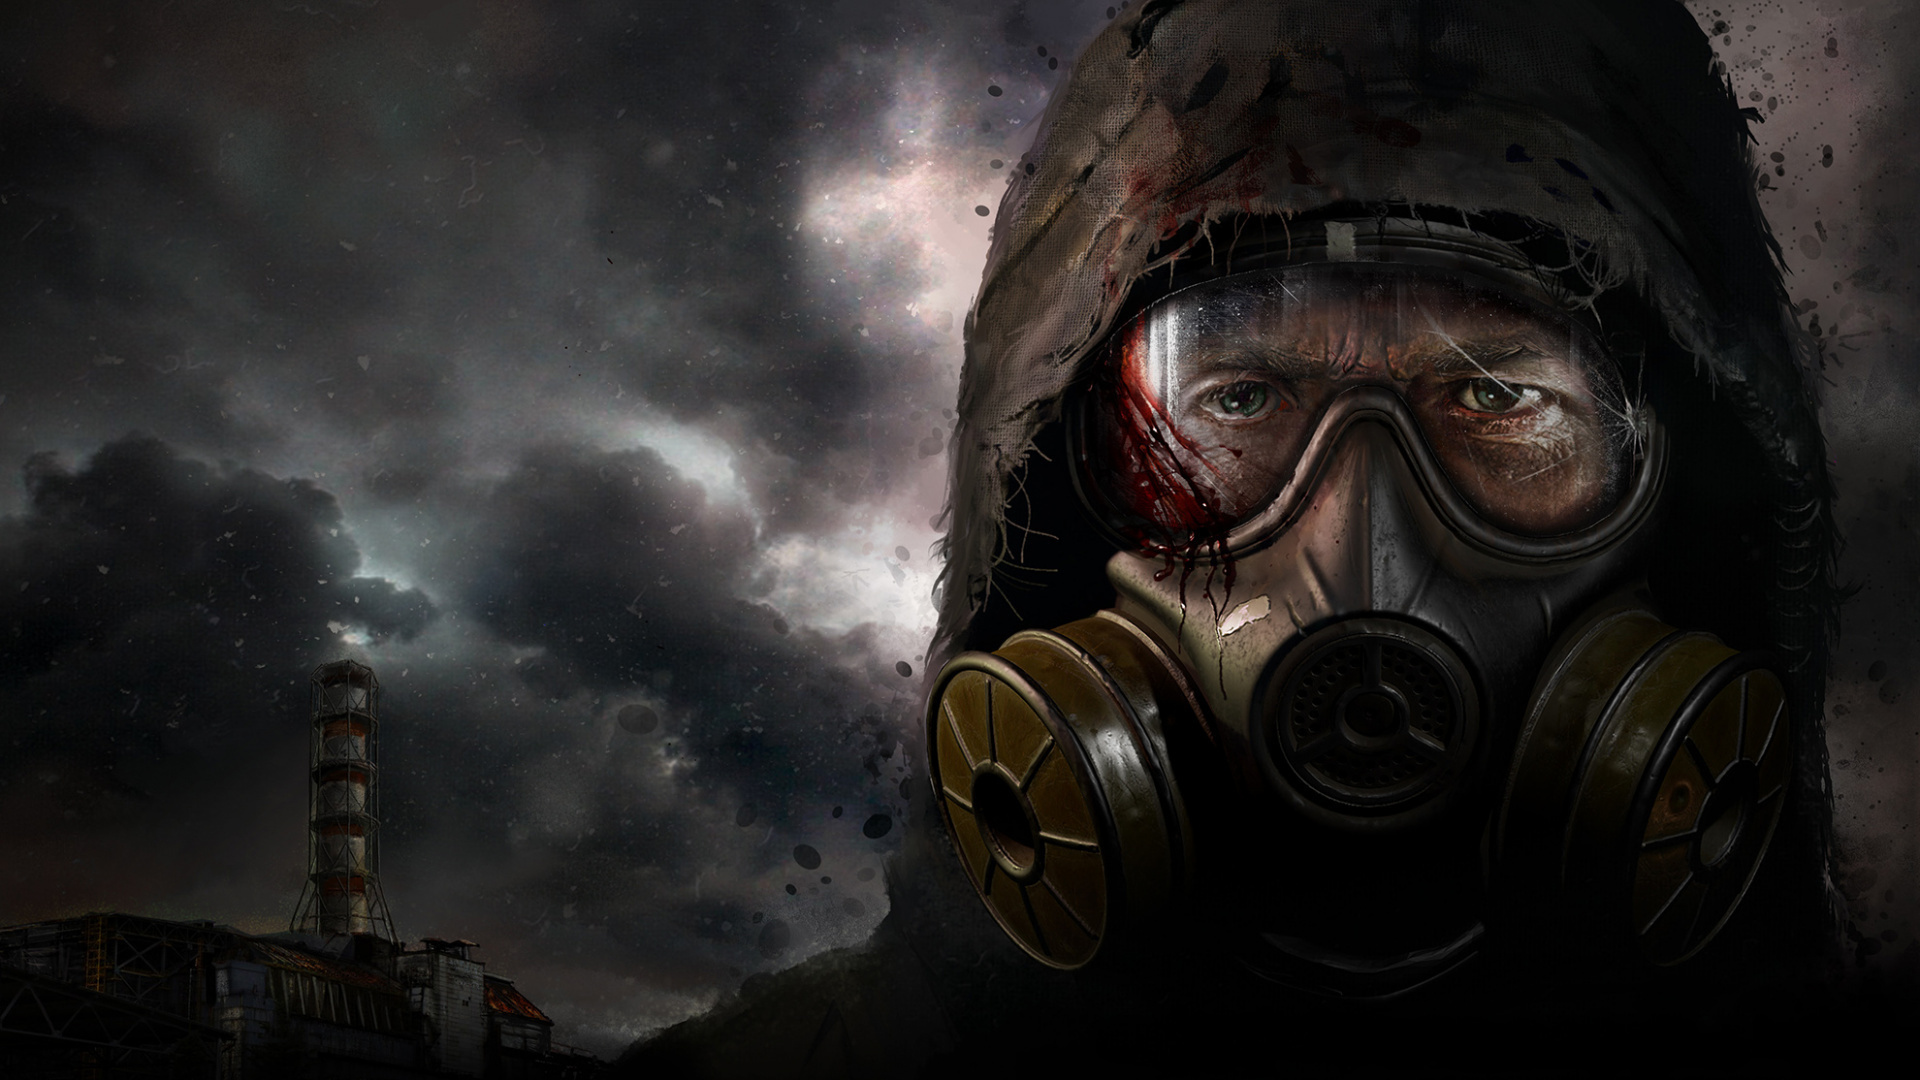 I giocatori boicottano S.T.A.L.K.E.R. 2: Heart of Chernobyl e sollecitato a rimuovere il gioco da Steam